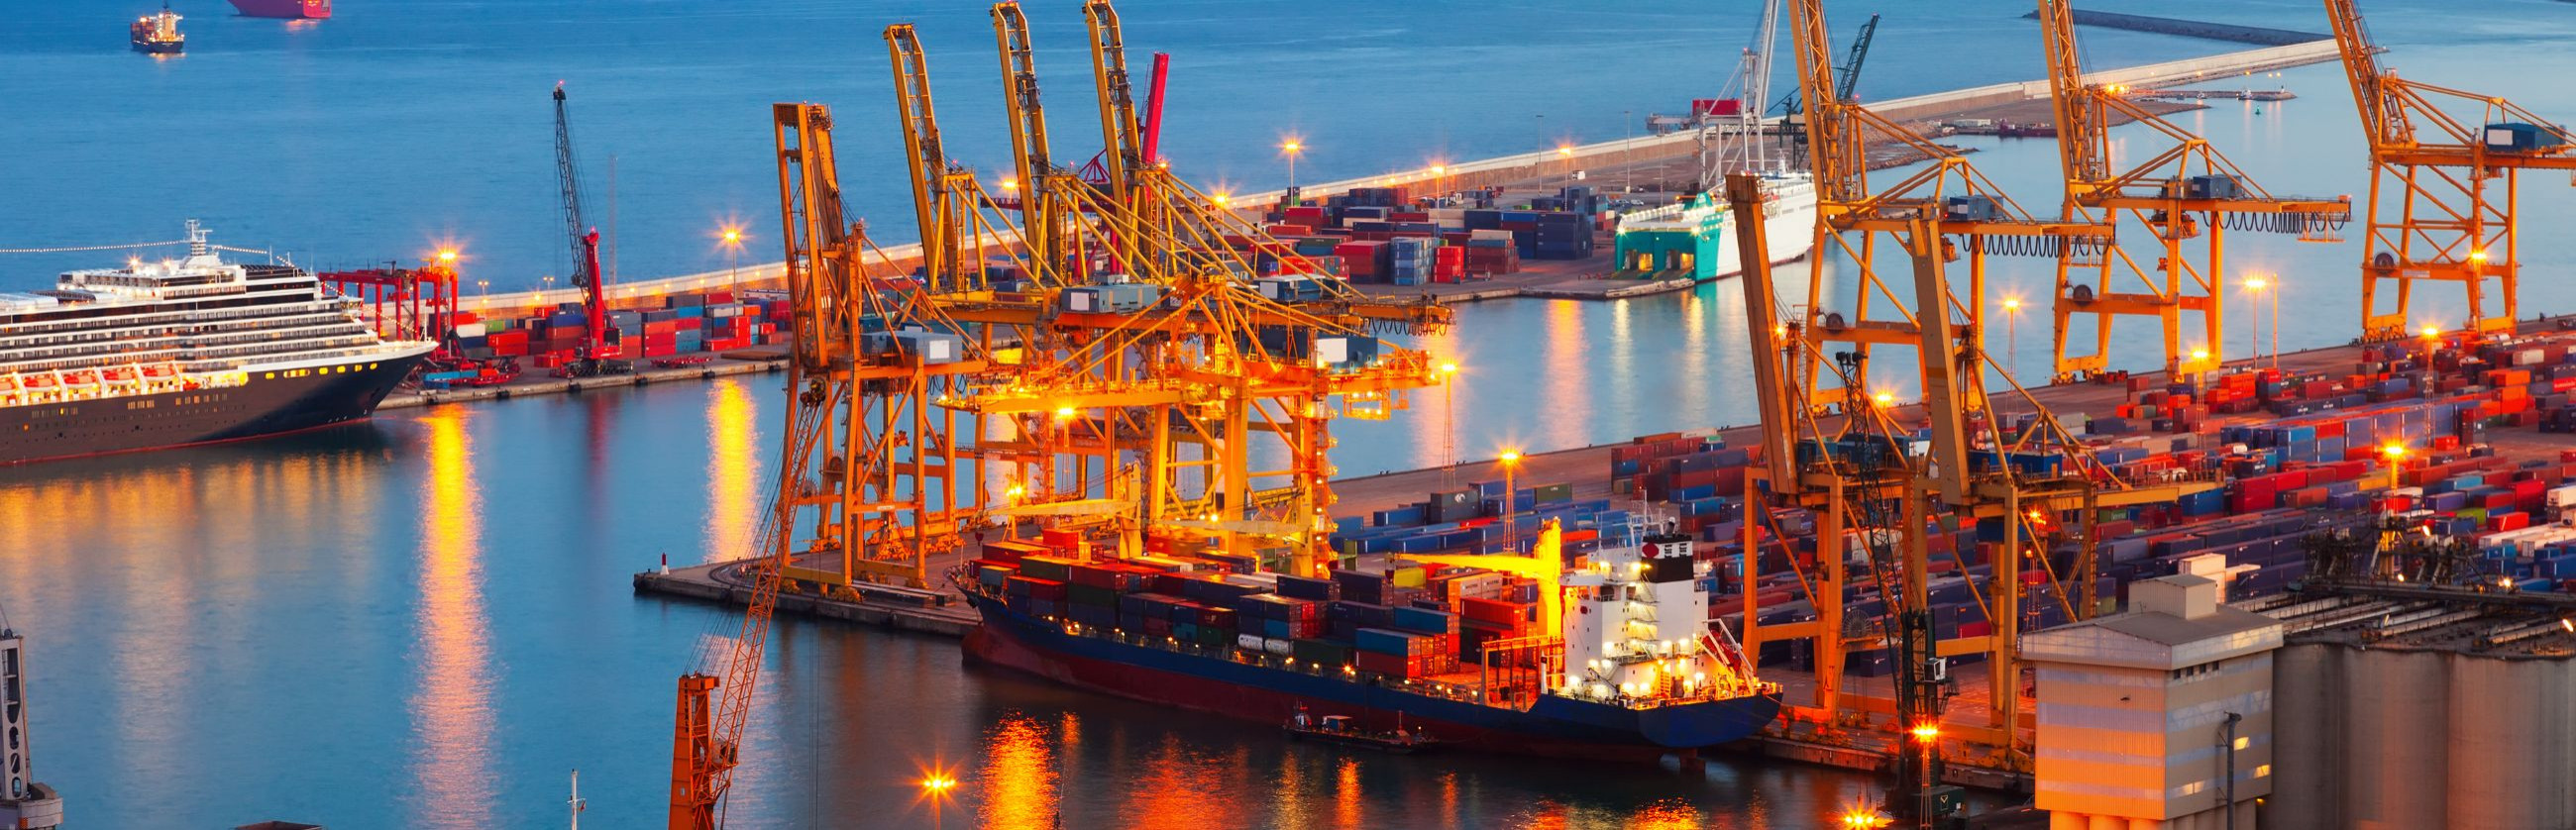 Kalatoode Import/Eksport jms teenused, tooted, konsultatsioonid